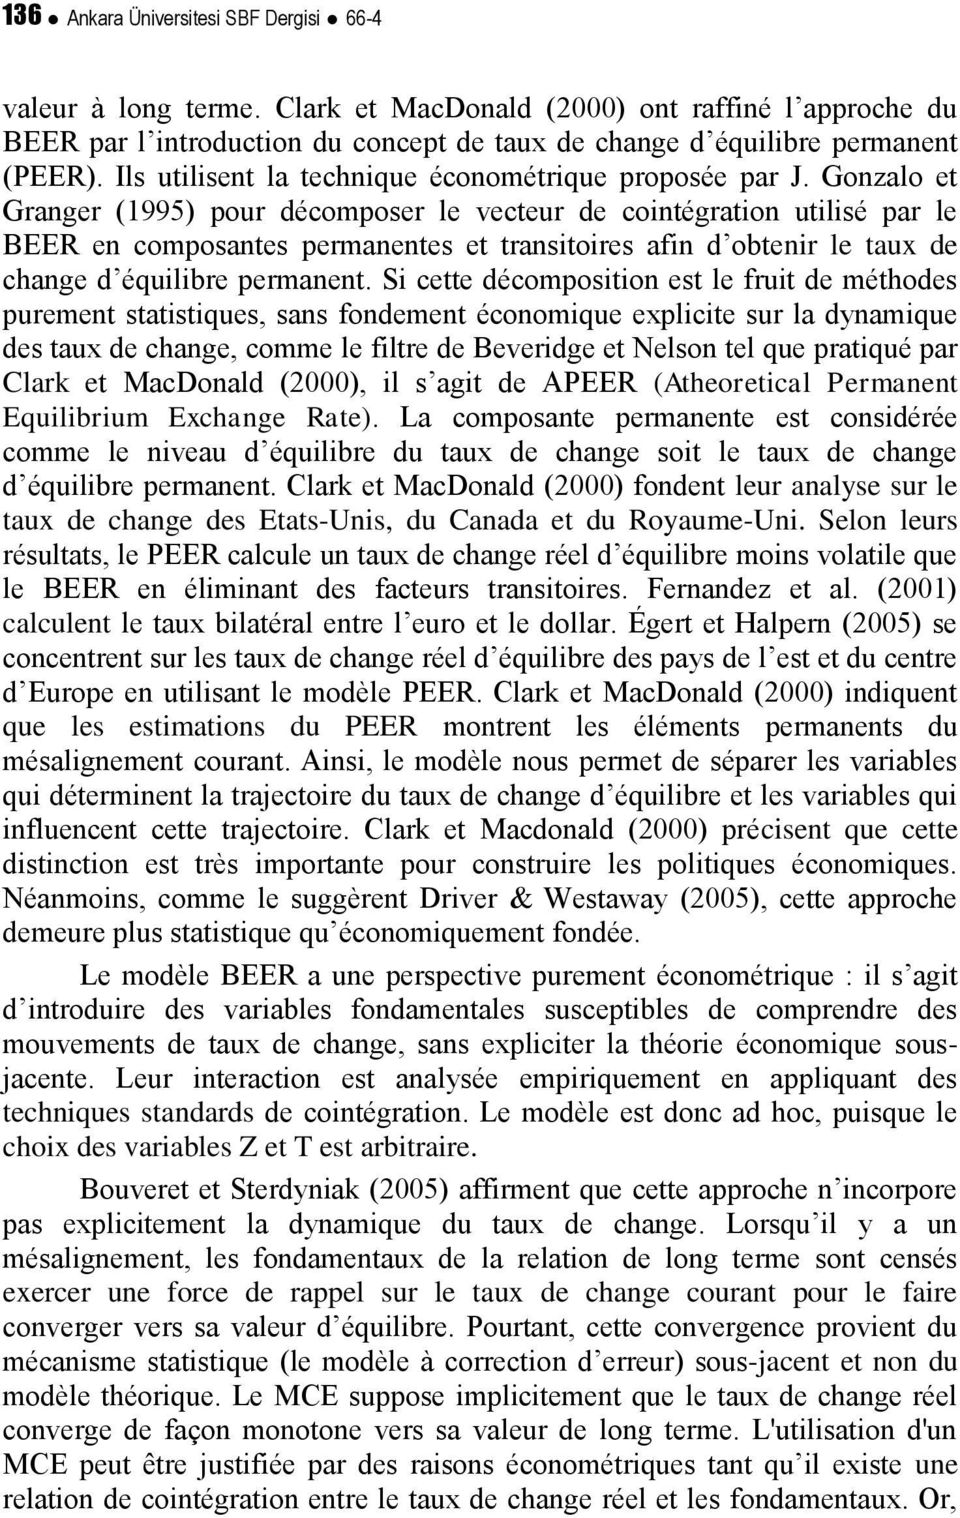 Gonzalo e Granger (1995) pour décomposer le veceur de coinégraion uilisé par le BEER en composanes permanenes e ransioires afin d obenir le aux de change d équilibre permanen.